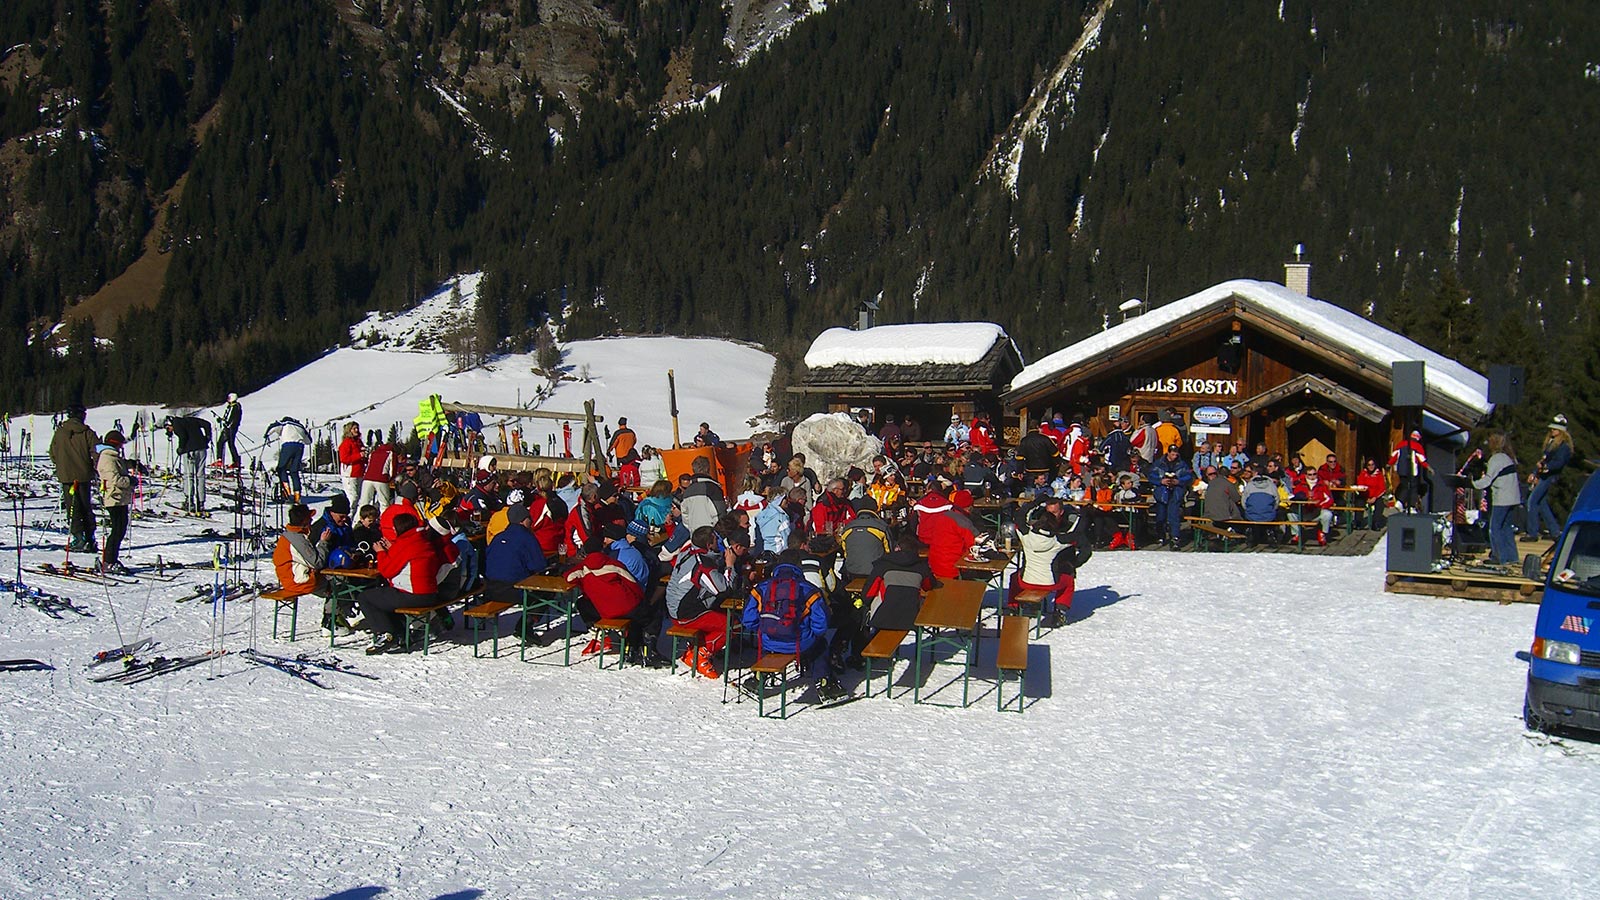 Il locale Midls Kosten accanto all'Albergo Blosegg affollatissimo durante la pausa pranzo